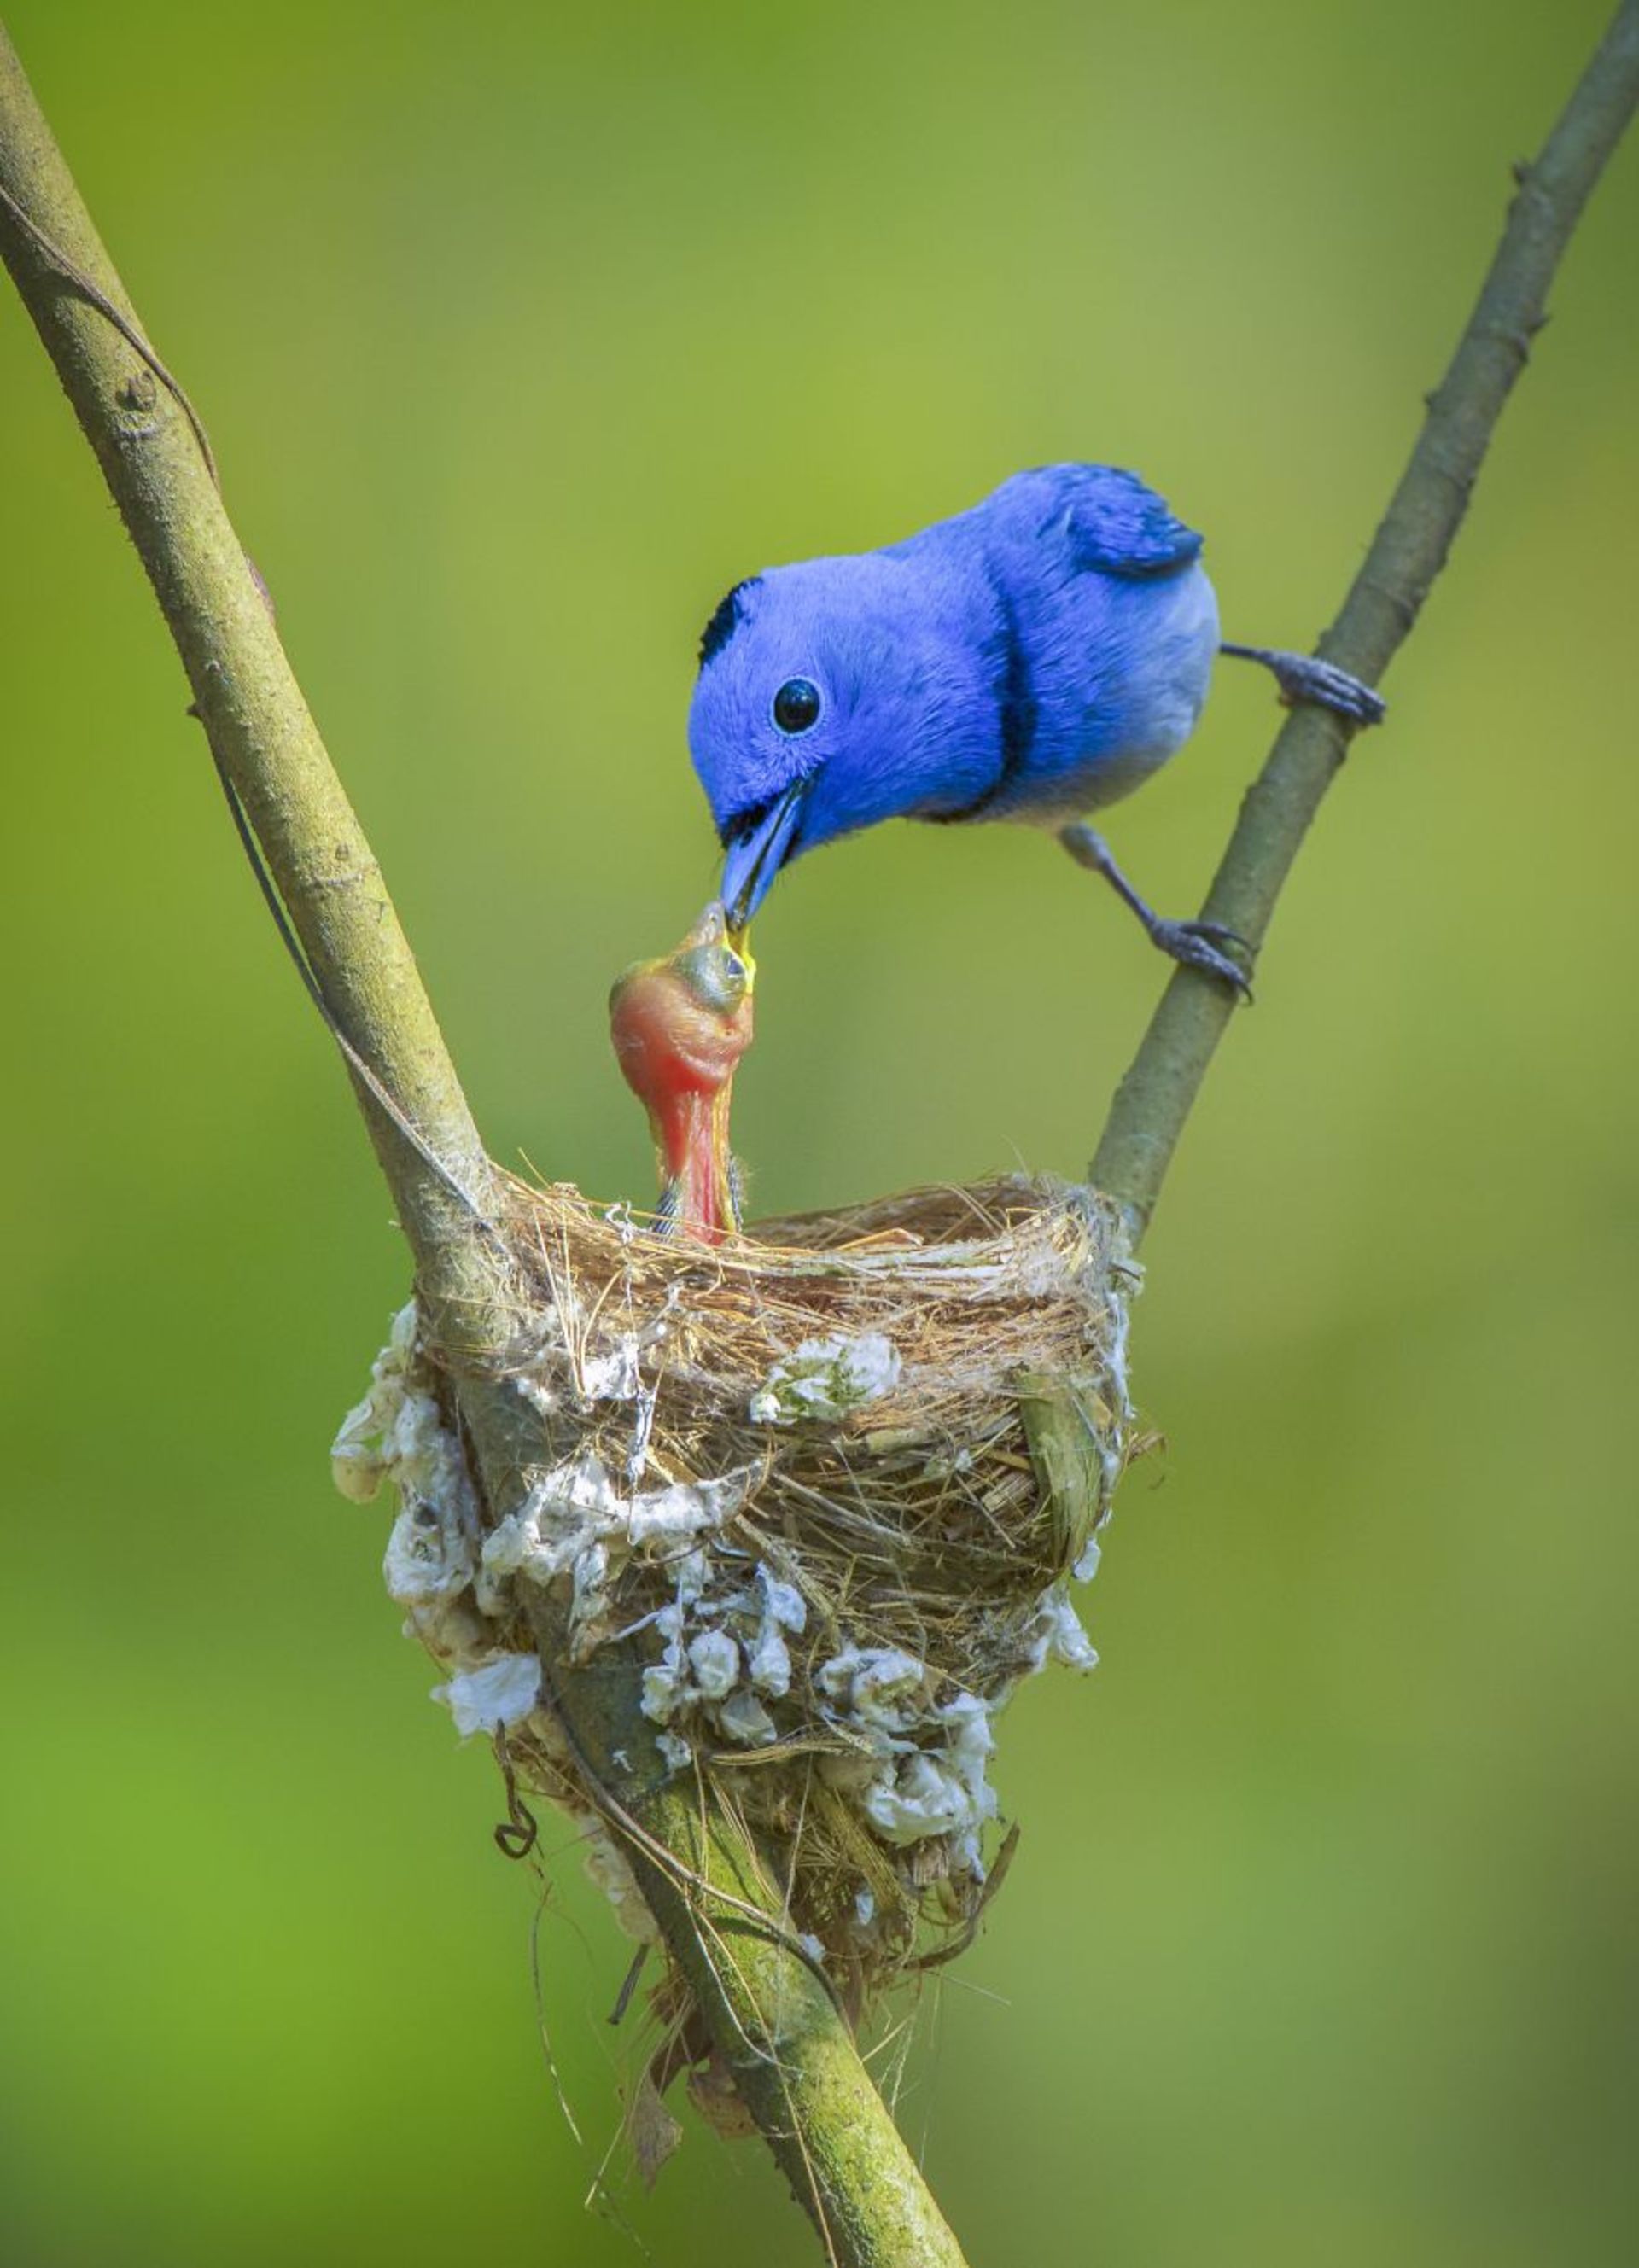 غذا دادن پرنده آبی به جوجه